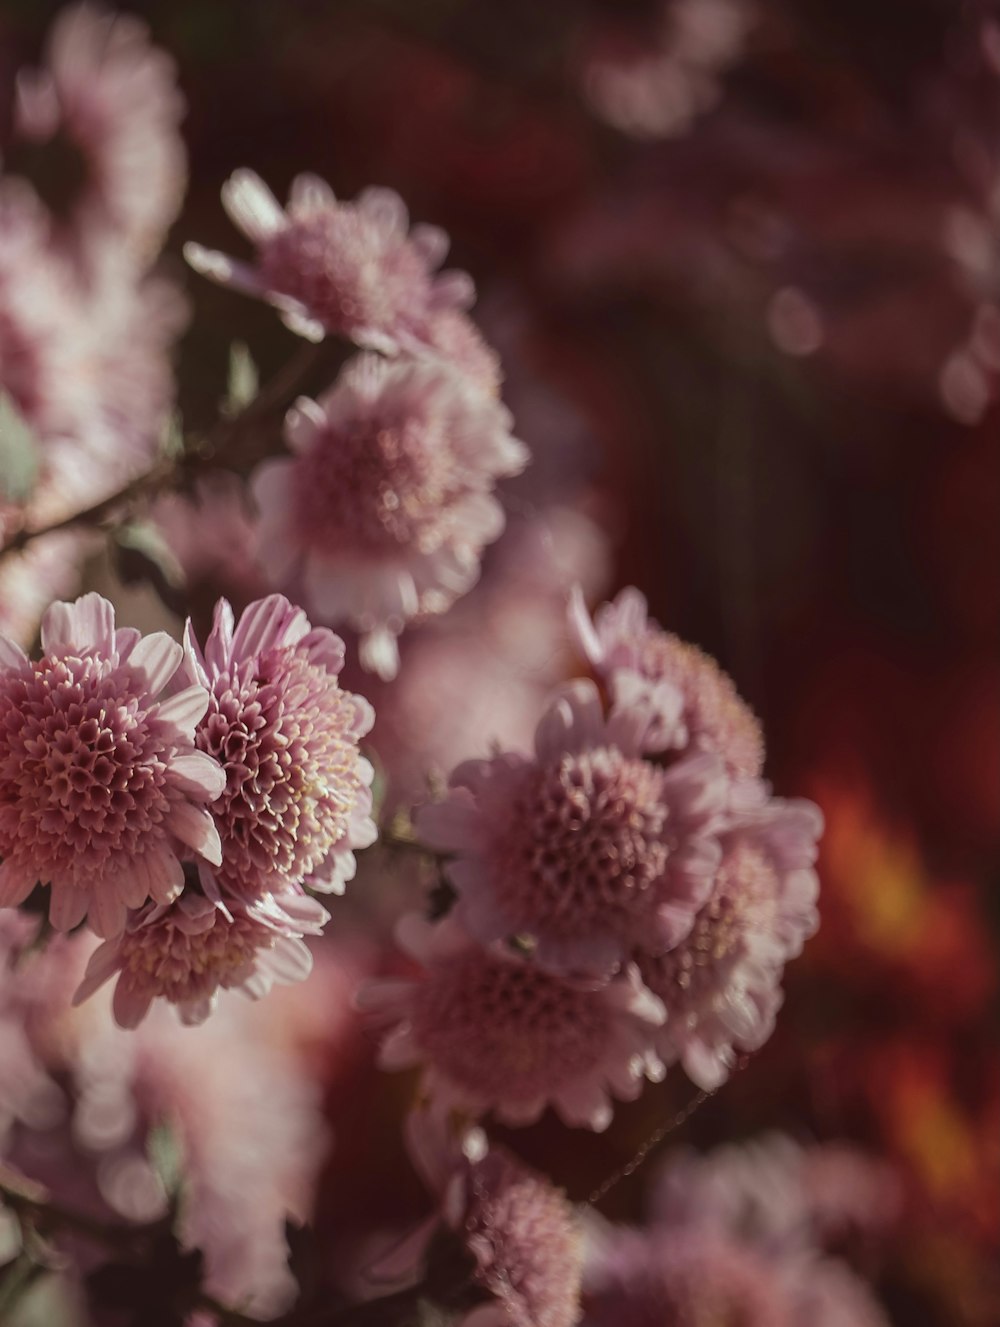 pink and white flowers in tilt shift lens